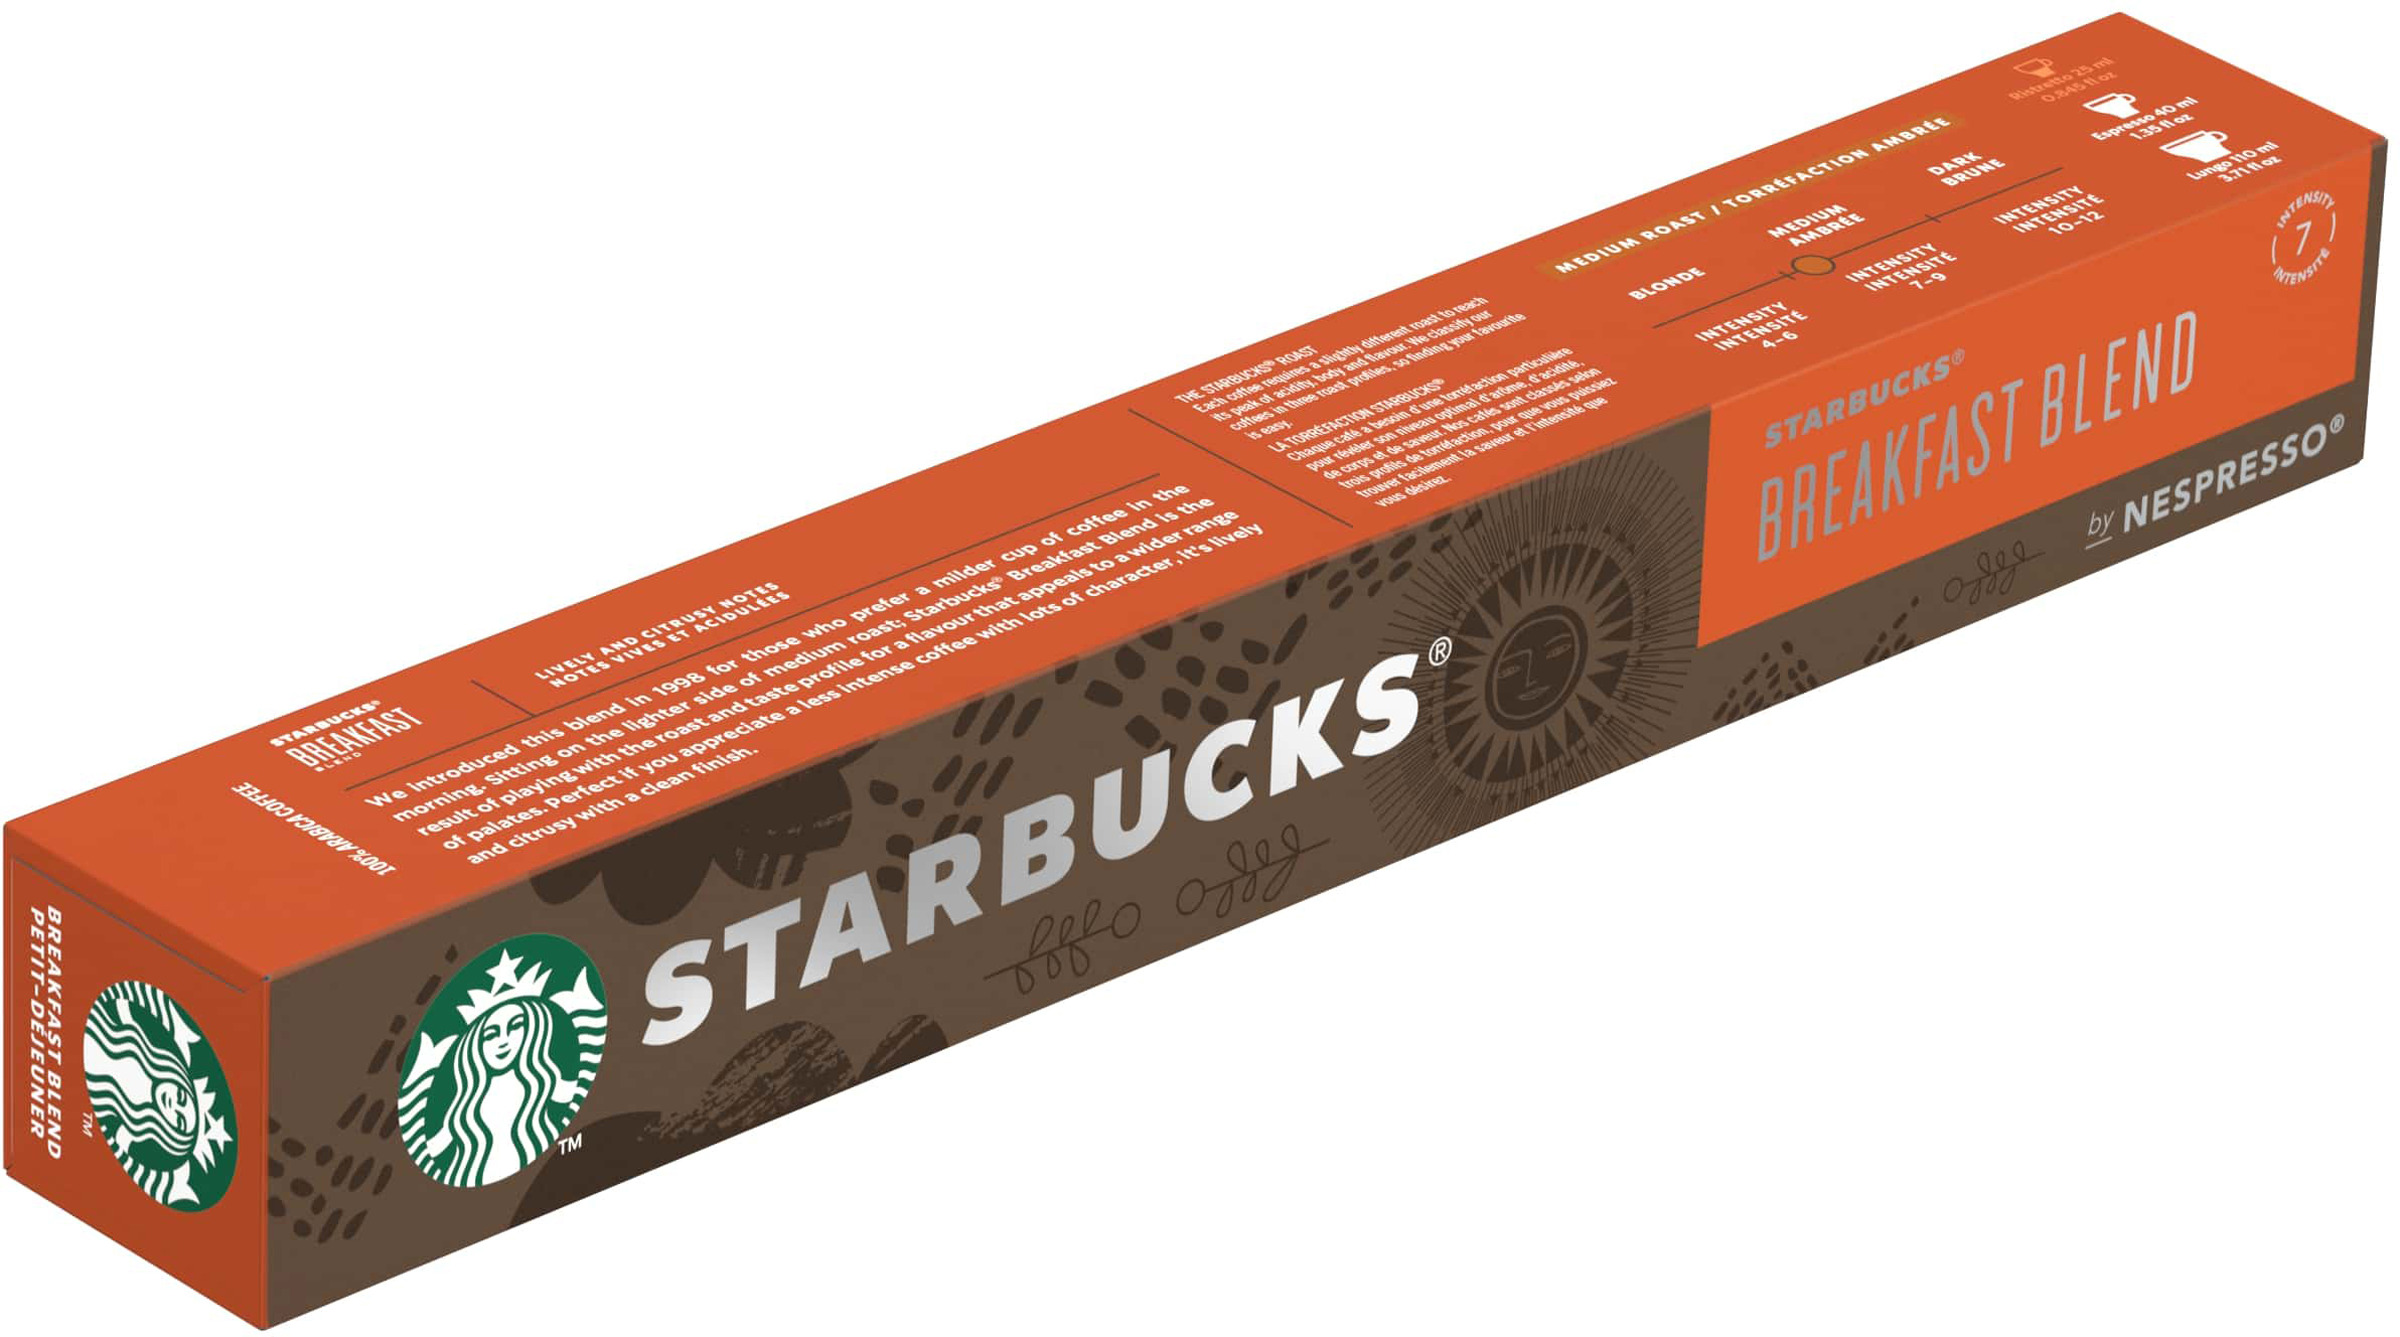 STARBUCKS Starbucks by Nespresso Breakfast Blend kaffekapslar 10 st